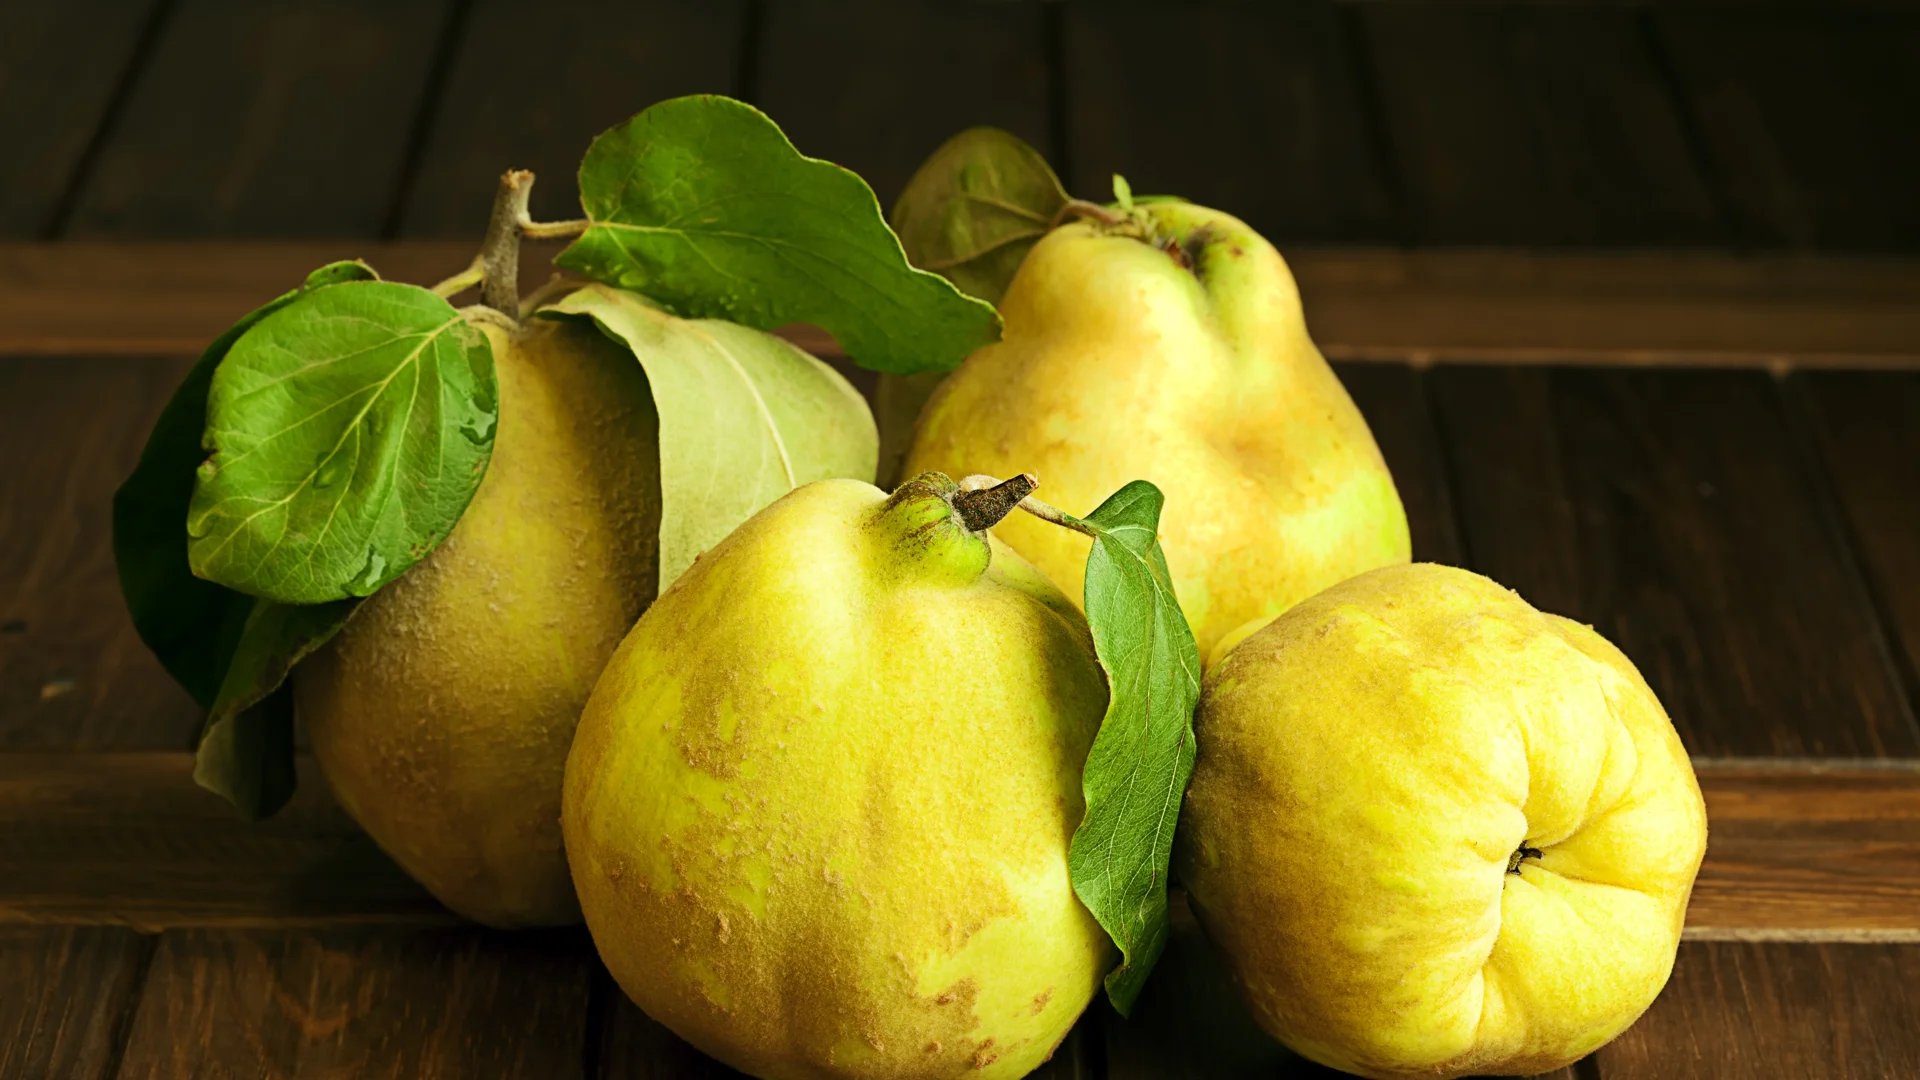 Този есенен плод е богат на витамини и предпазва от инфекции